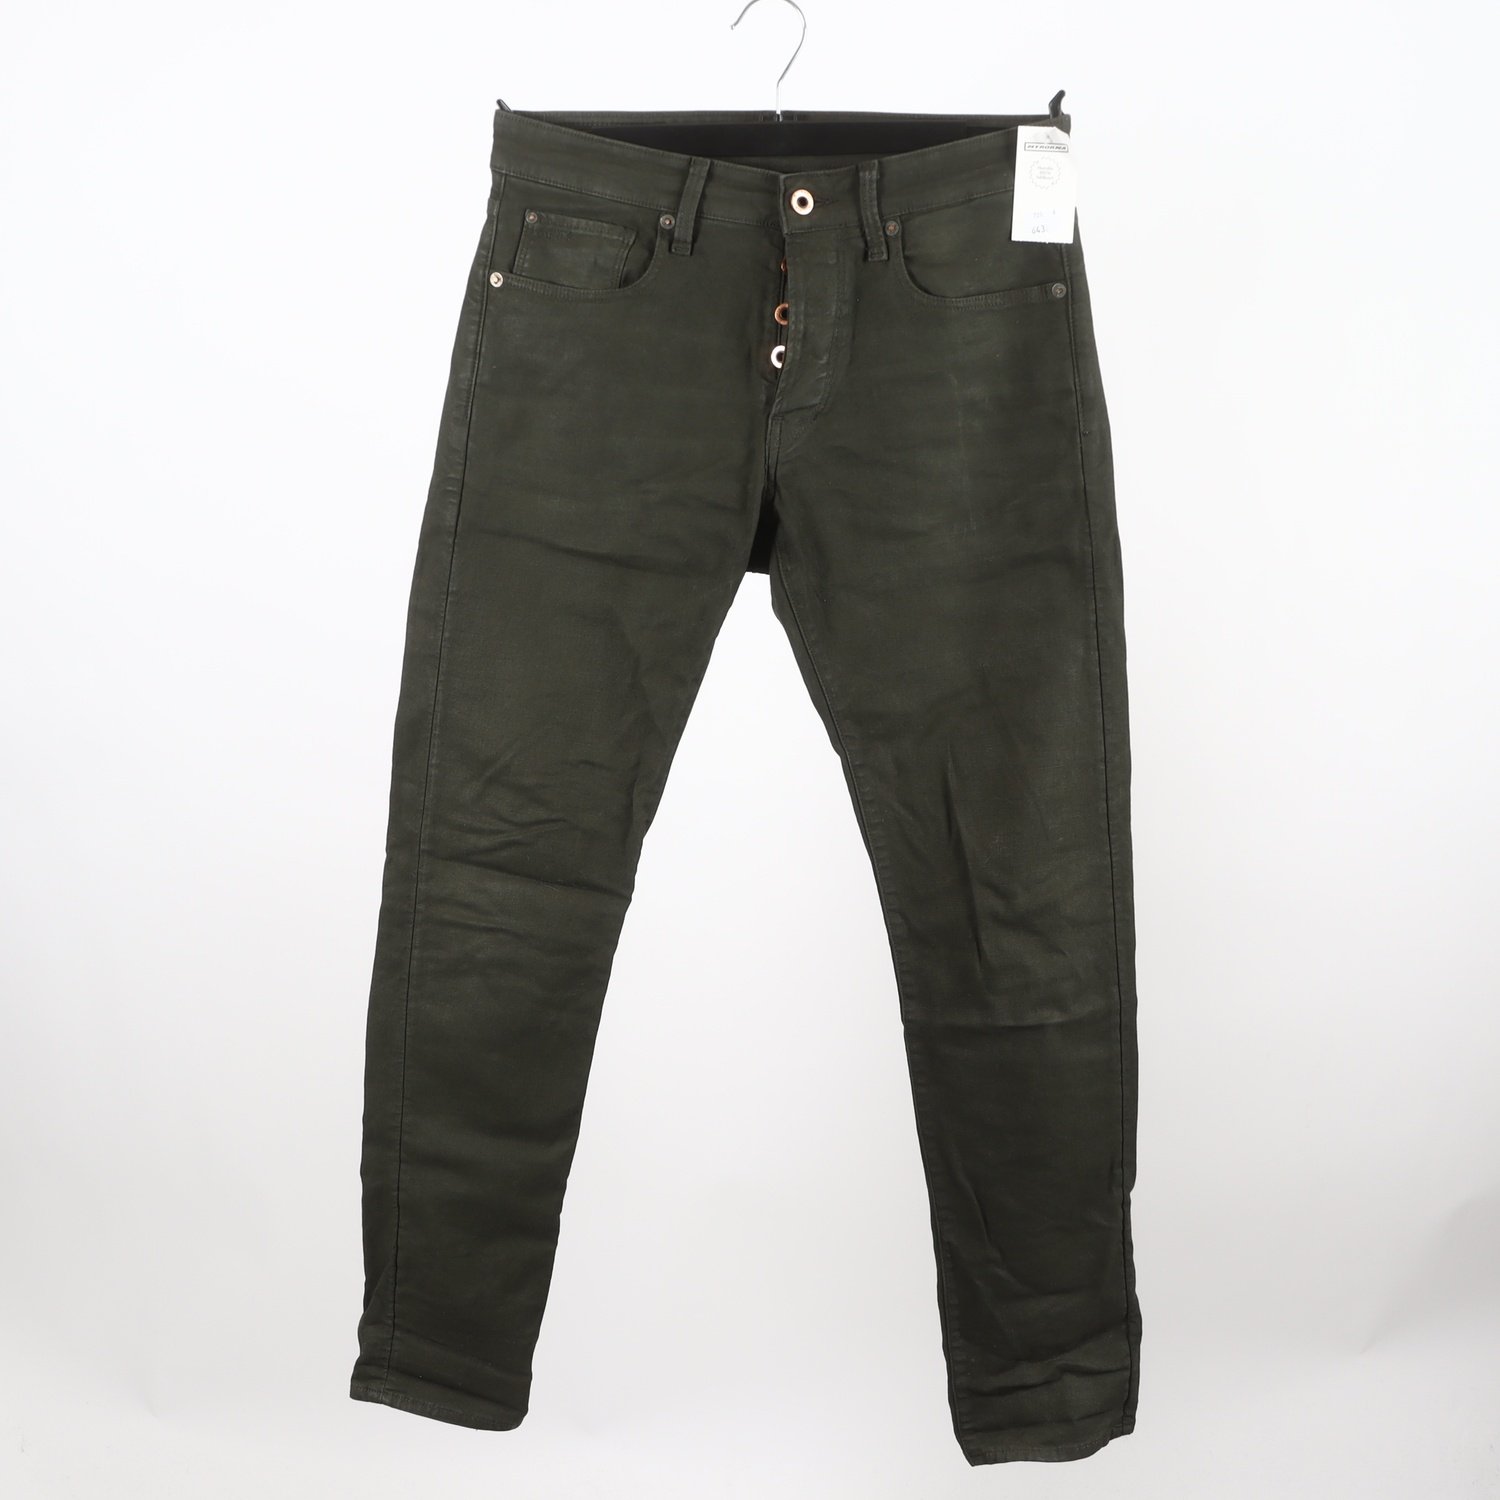 Jeans, G-star, oliv grön stl. 32